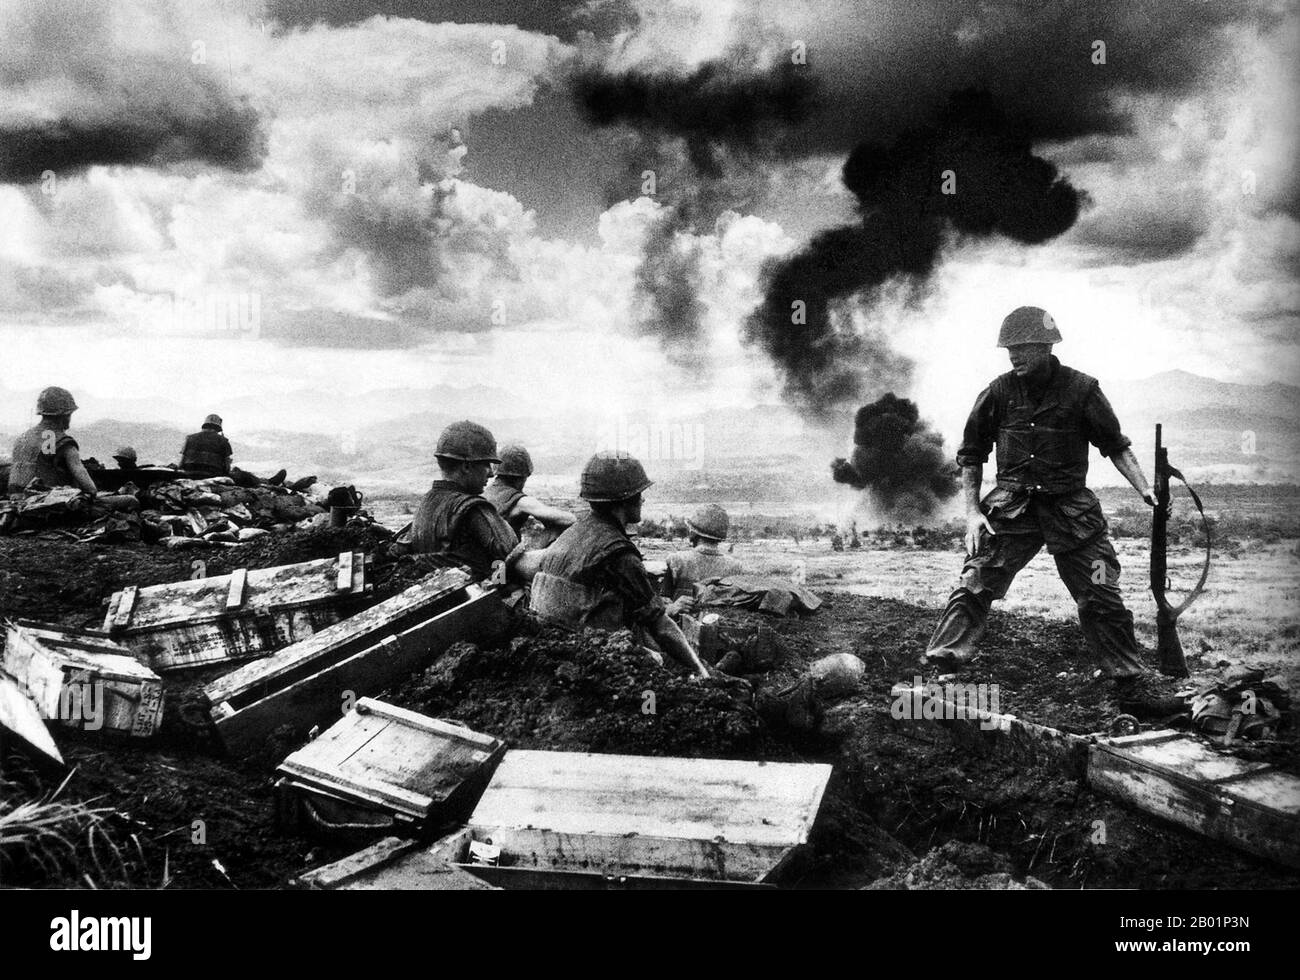 Vietnam: US-Soldaten verteidigen den Perimeter auf der Con Thien Base, 1968. Conn Thien (Vietnamesisch Cồn Tiên, was „Hügel der Engel“ bedeutet) war eine Militärbasis, die zunächst als Spezialeinsatzlager der US Army begann, bevor sie zu einer Kampfbasis des United States Marine Corps wechselte. Sie lag in der Nähe der vietnamesischen Demilitarisierten Zone (DMZ), etwa 1,9 km von Nordvietnam entfernt, im Bezirk Gio Linh in der Provinz Quảng Trị. Es war Schauplatz heftiger Kämpfe von Februar 1967 bis Februar 1968. Stockfoto